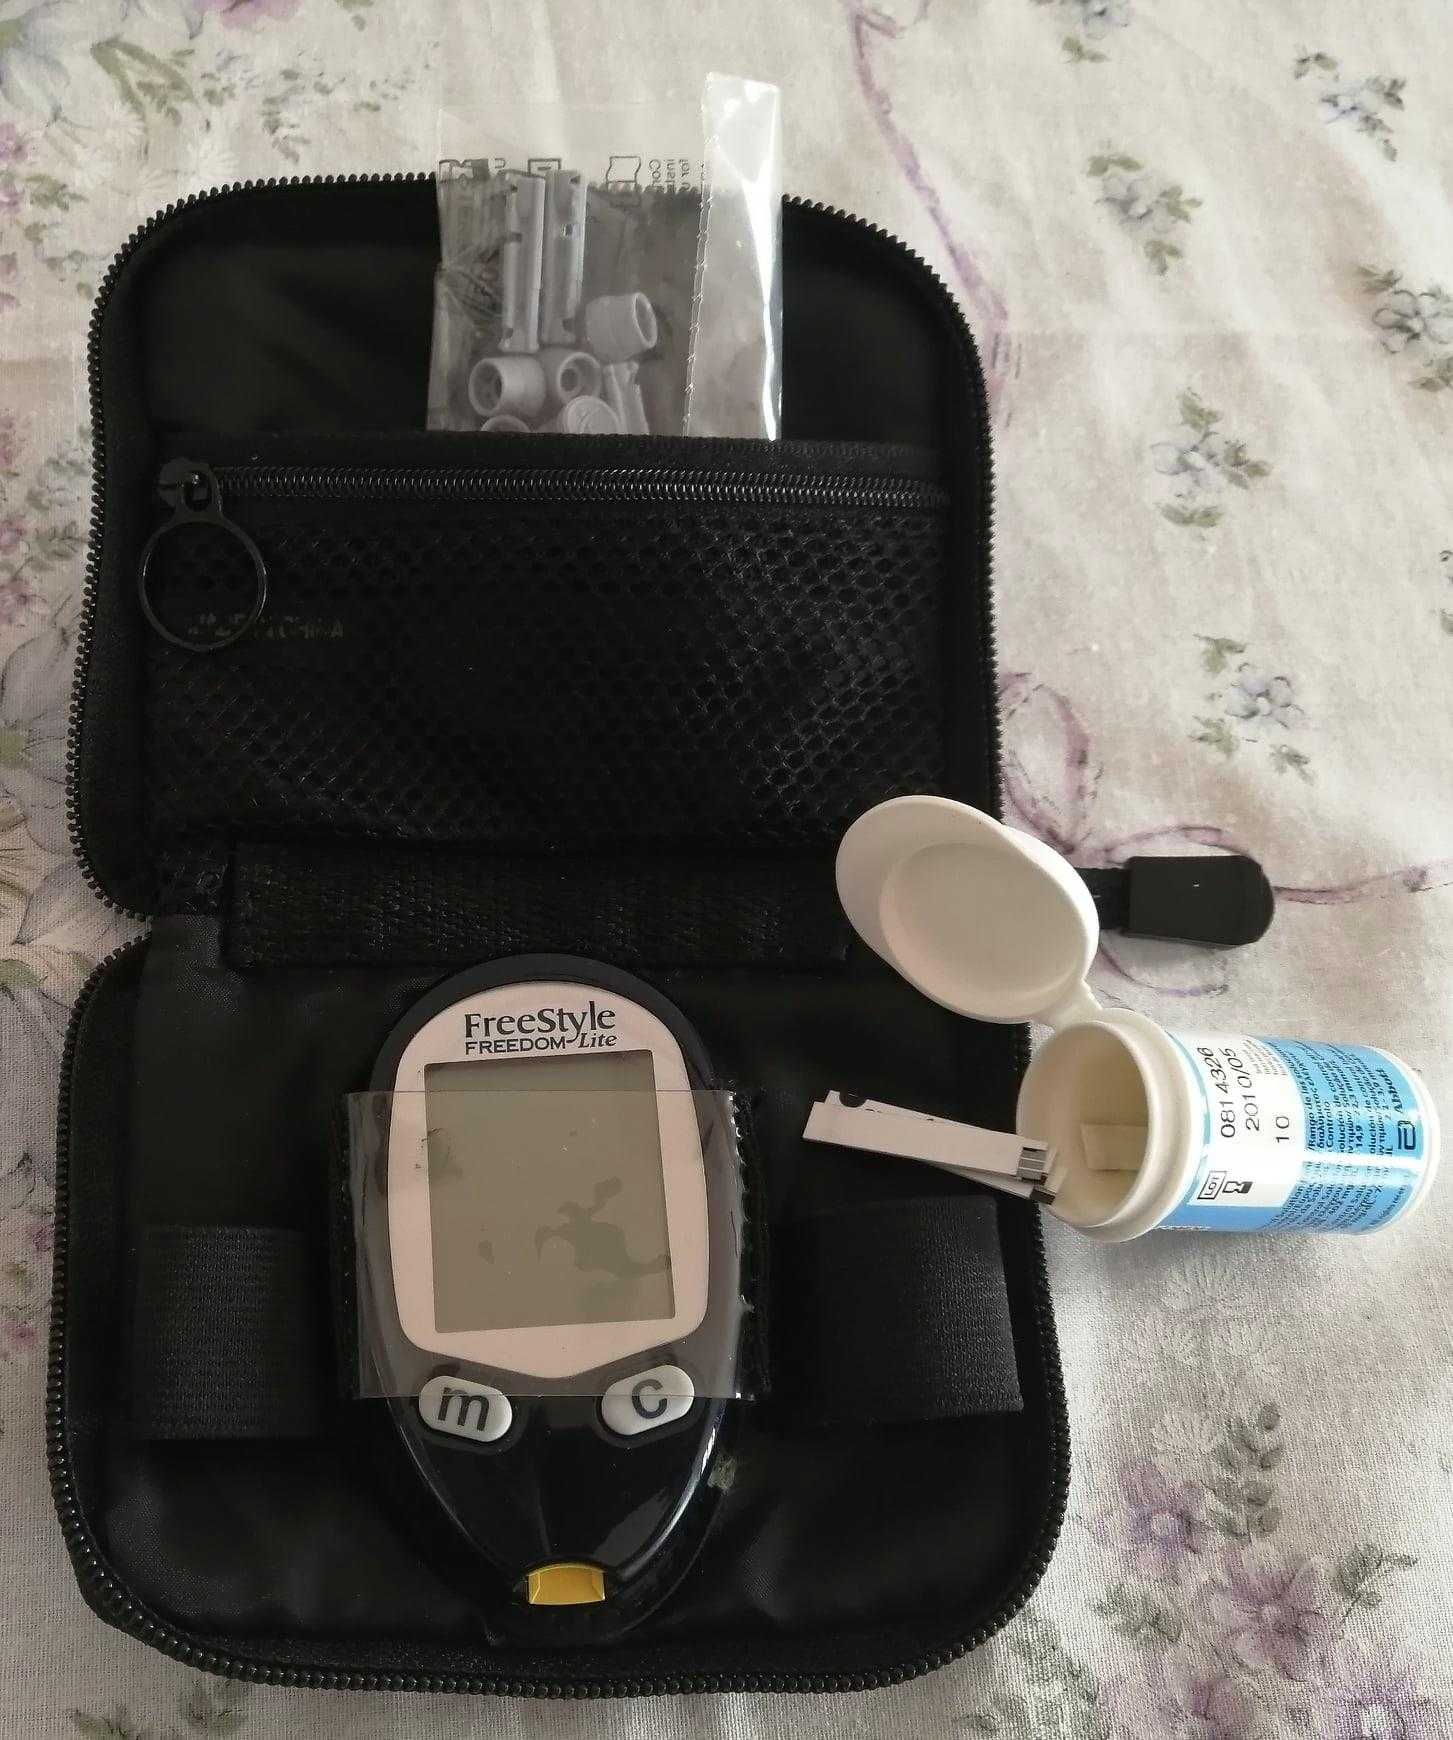 medidor de glucose conforme fotografias